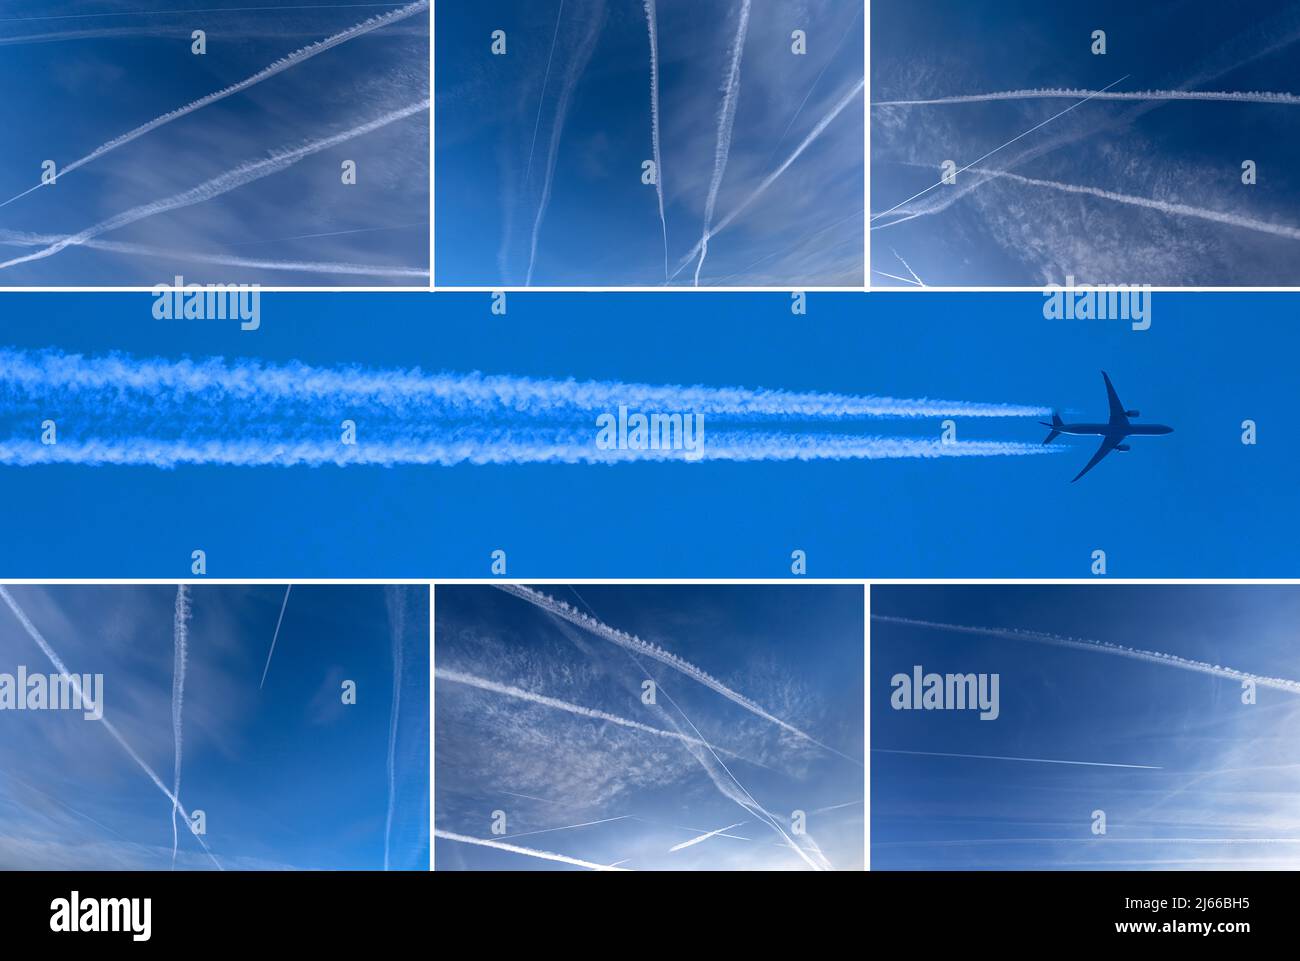 Verkehrflugzeug und Kondensstreifen, blauer Himmel, Bayern, Deutschland, Coillage Stock Photo